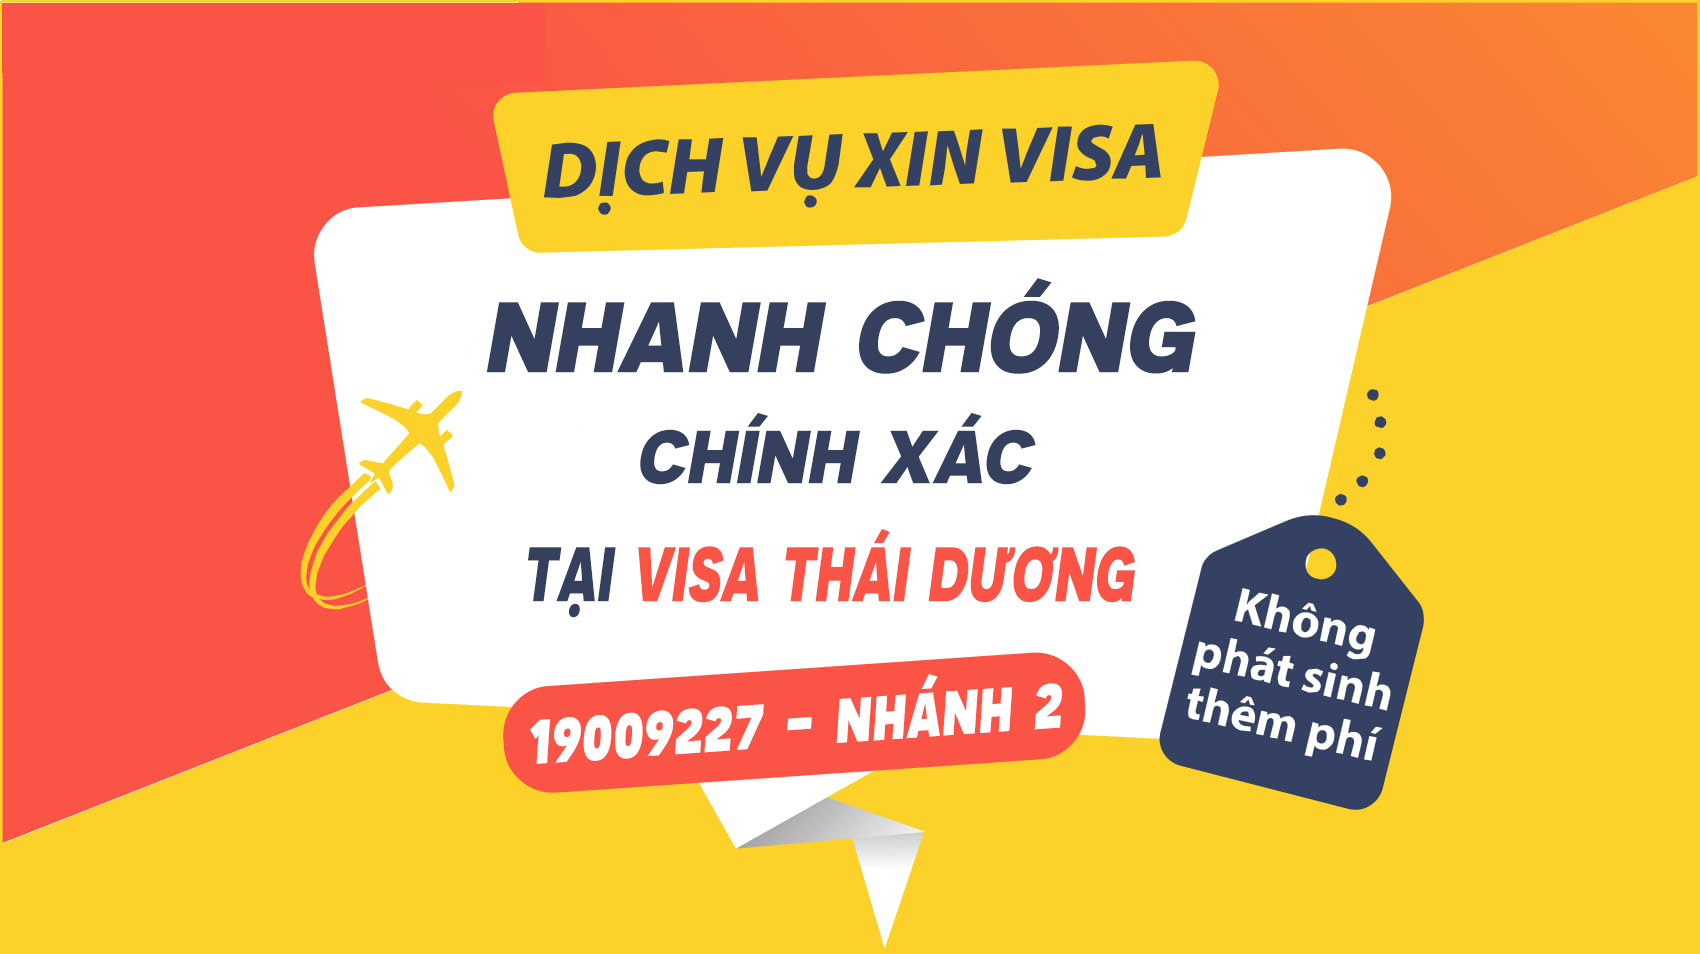 Visa Thái Dương chuyên gia hạn visa Việt Nam